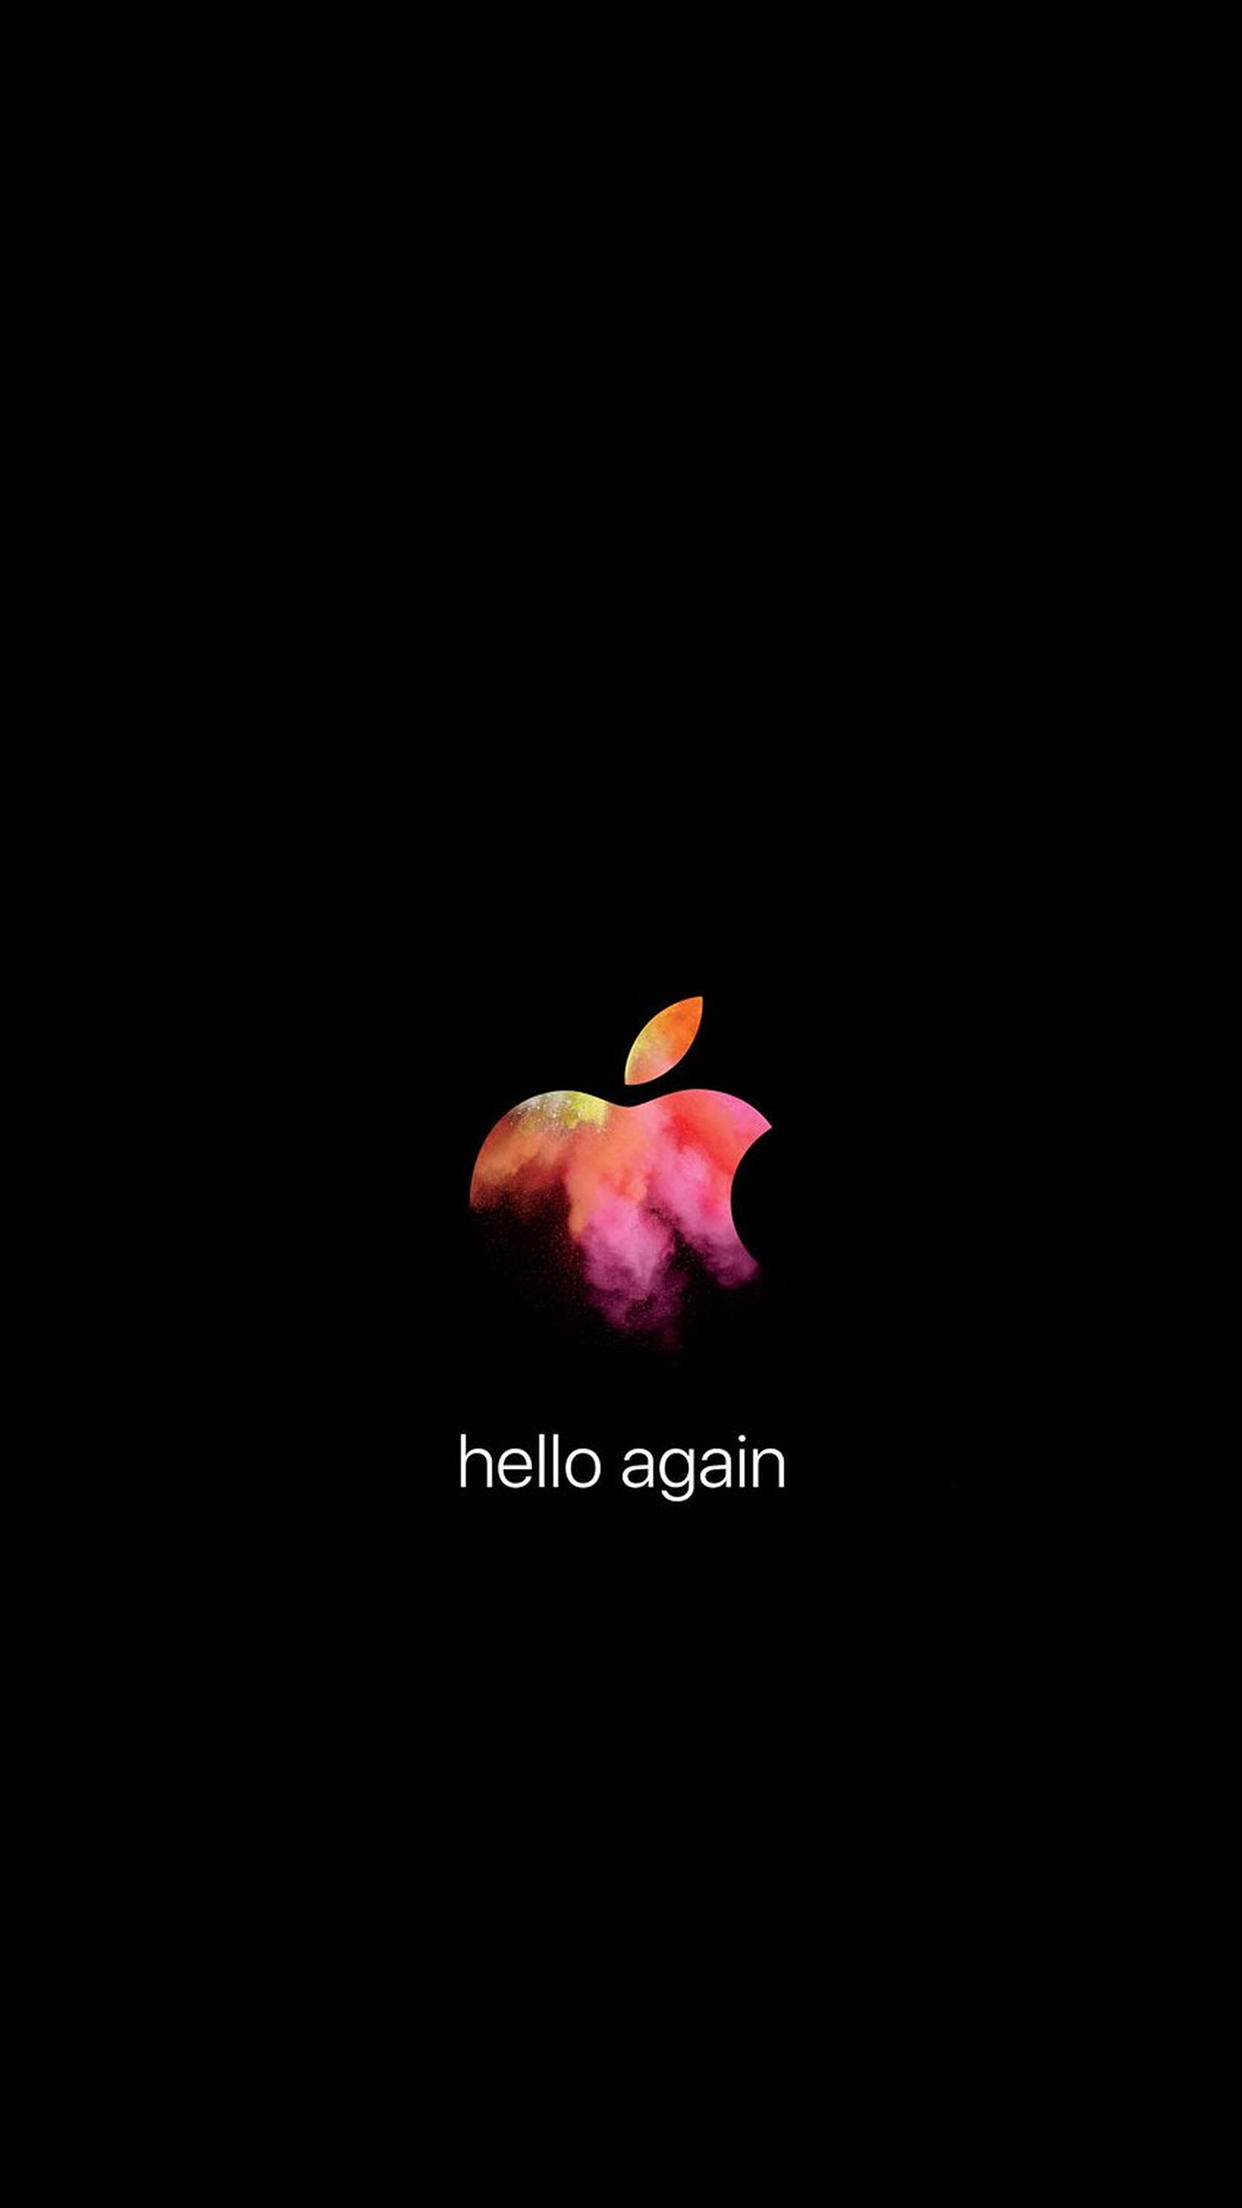 Apple招待状デザイン壁紙 Hello Again 公開 私設apple委員会